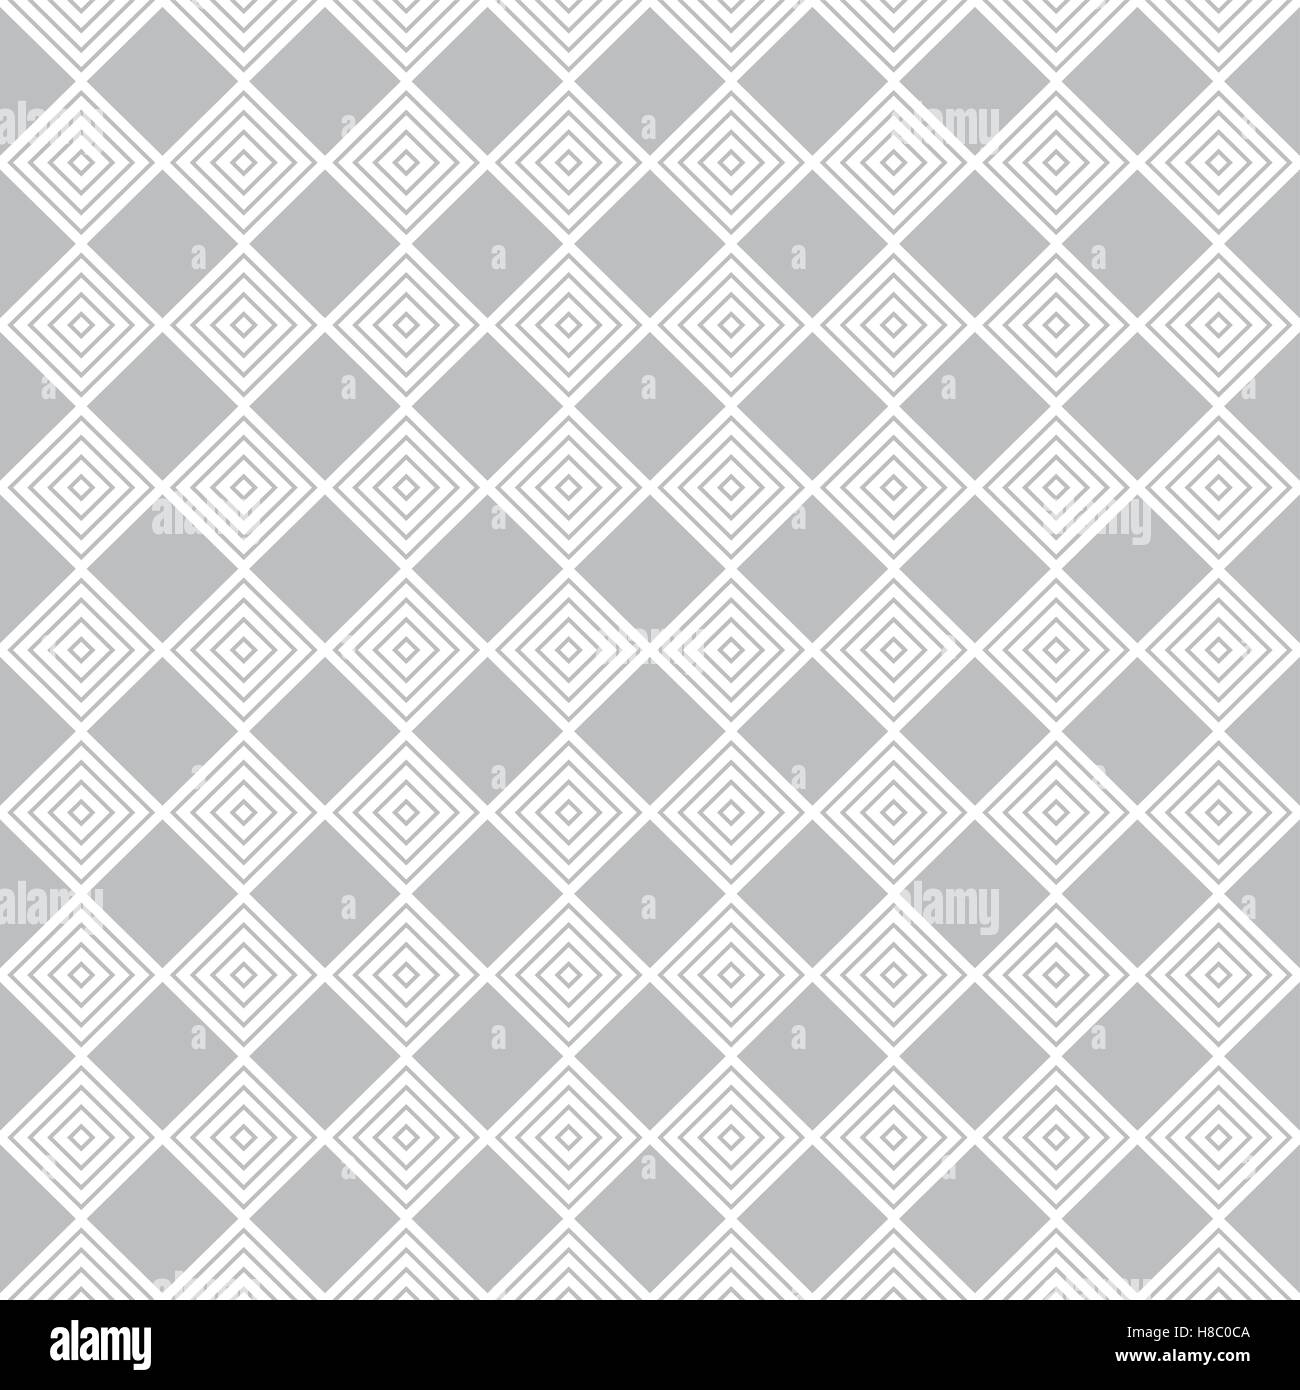 Geometrische nahtlose Muster mit Diamanten zu wiederholen. Die Textur in Form von einem Schachbrett. Vektor-illustration Stock Vektor